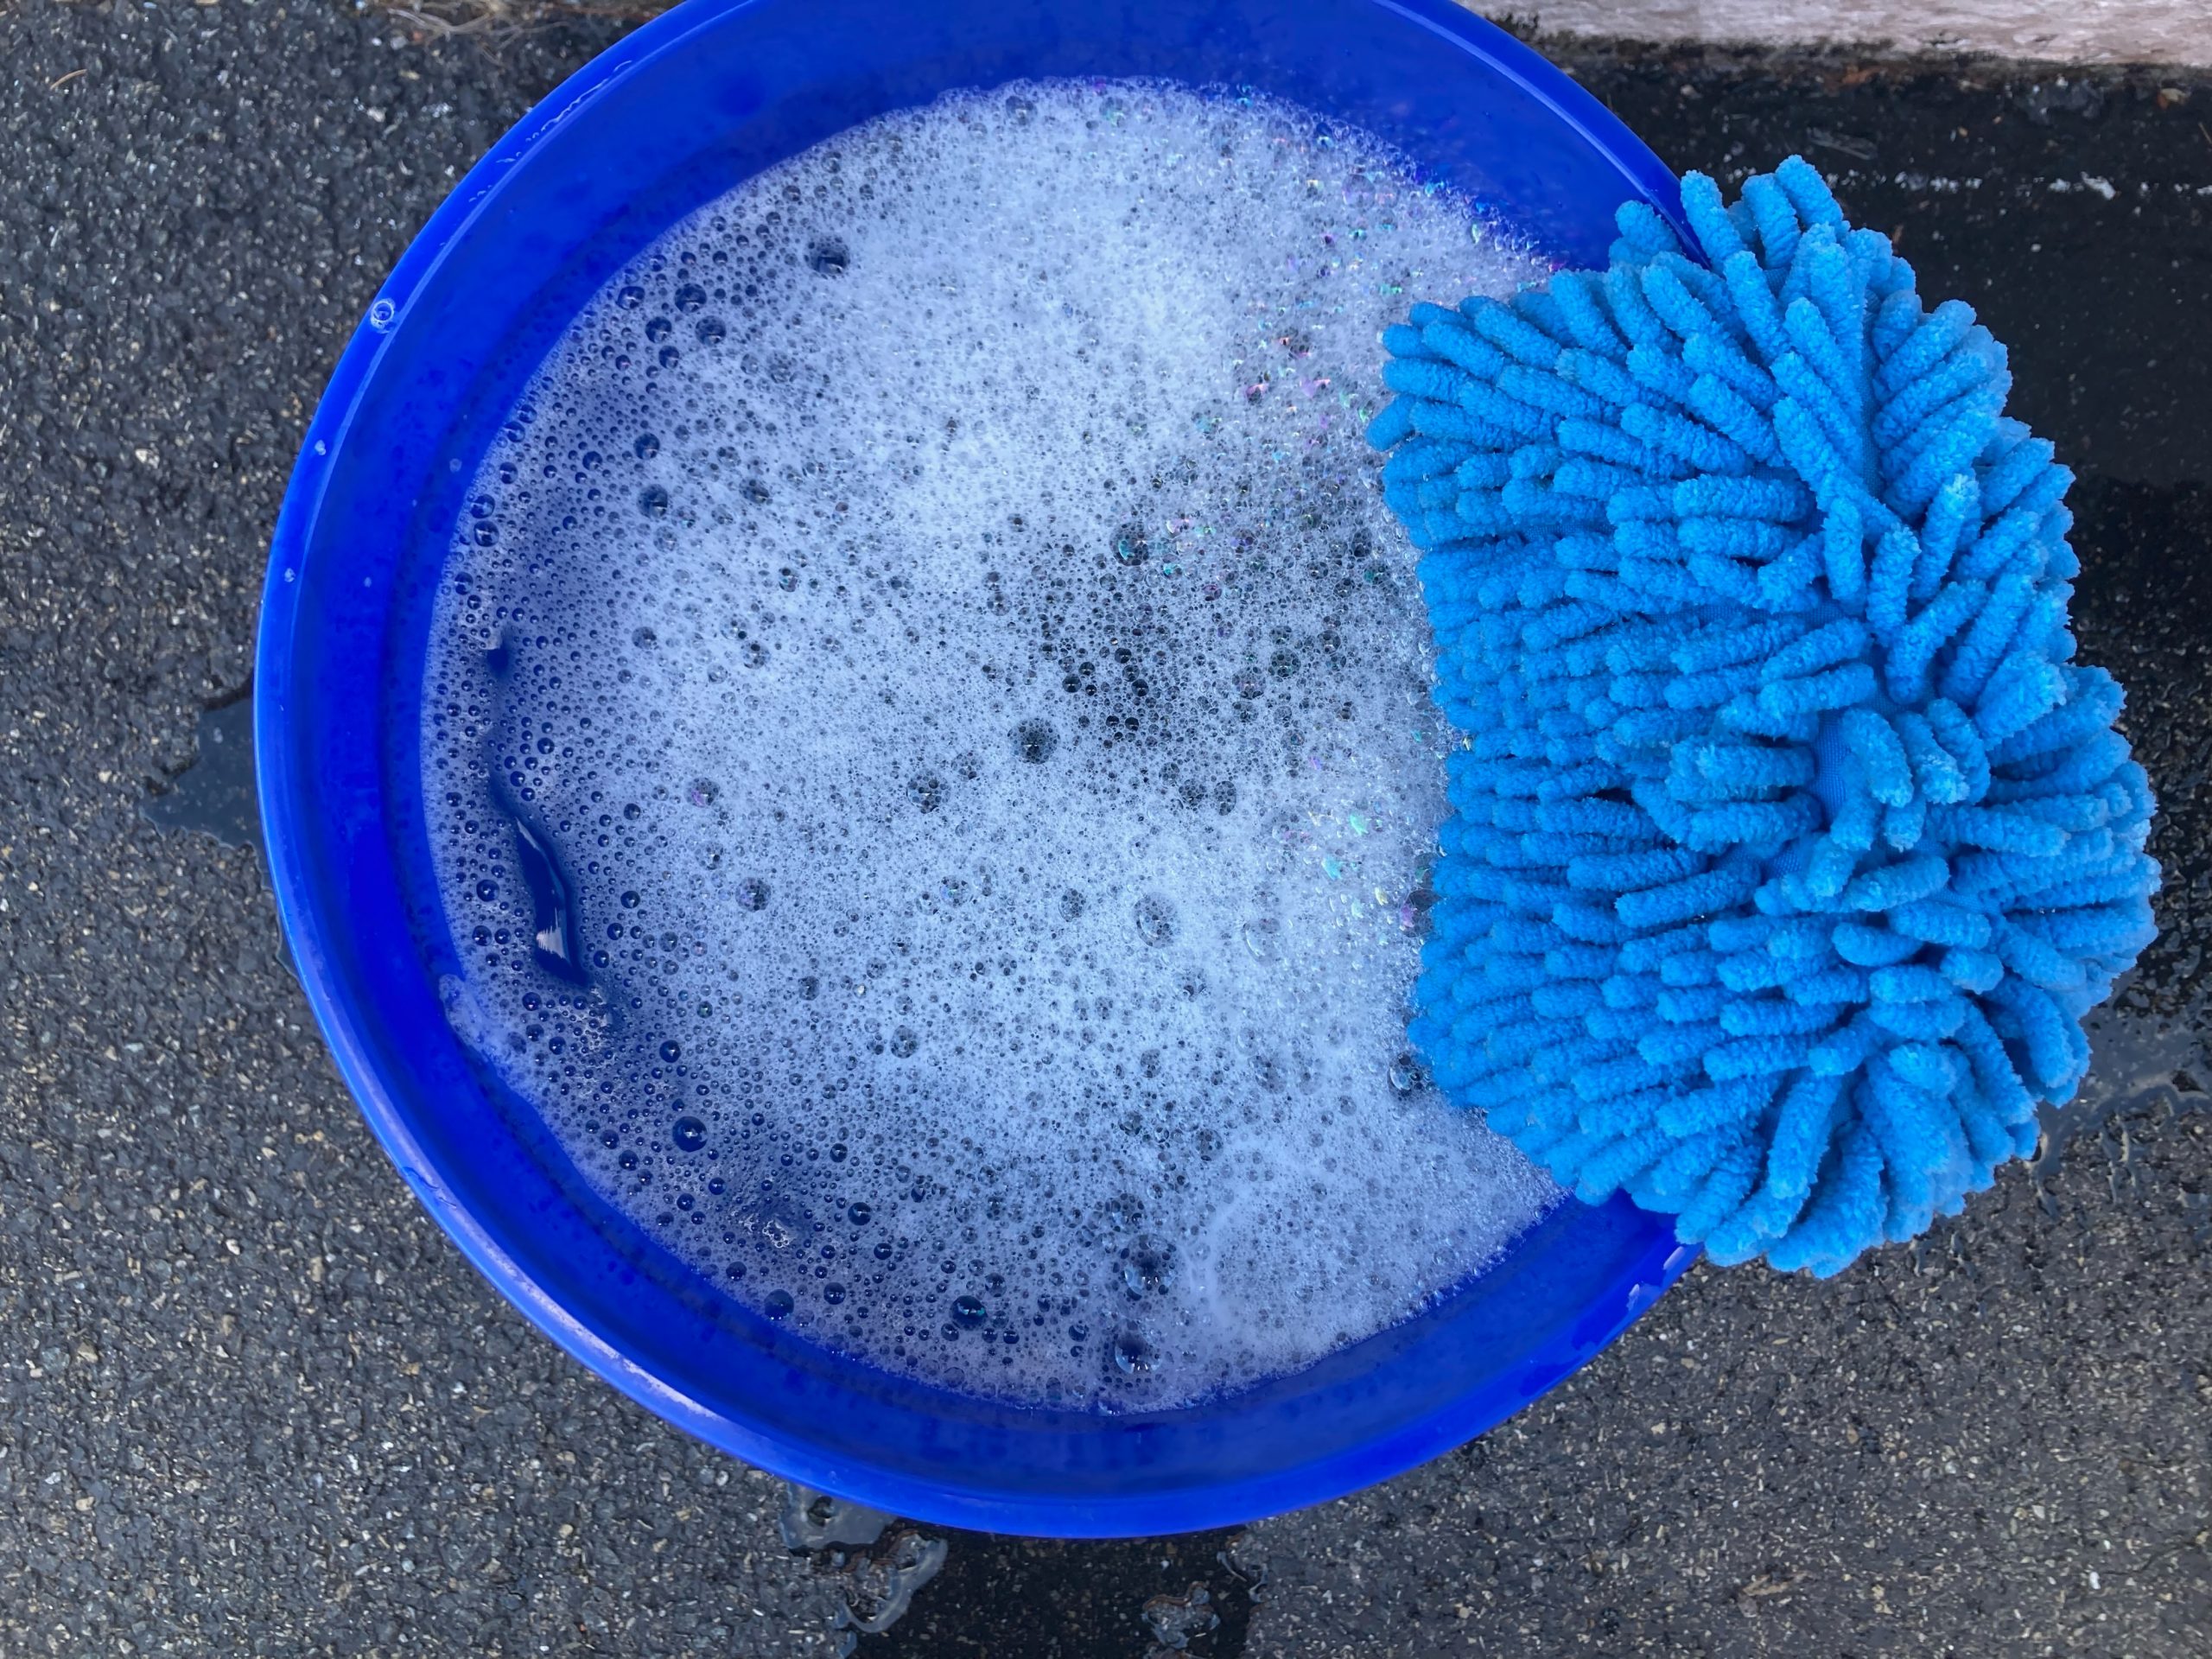 Koch Chemie Gentle Snow Foam | GSF Soap 1 Liter